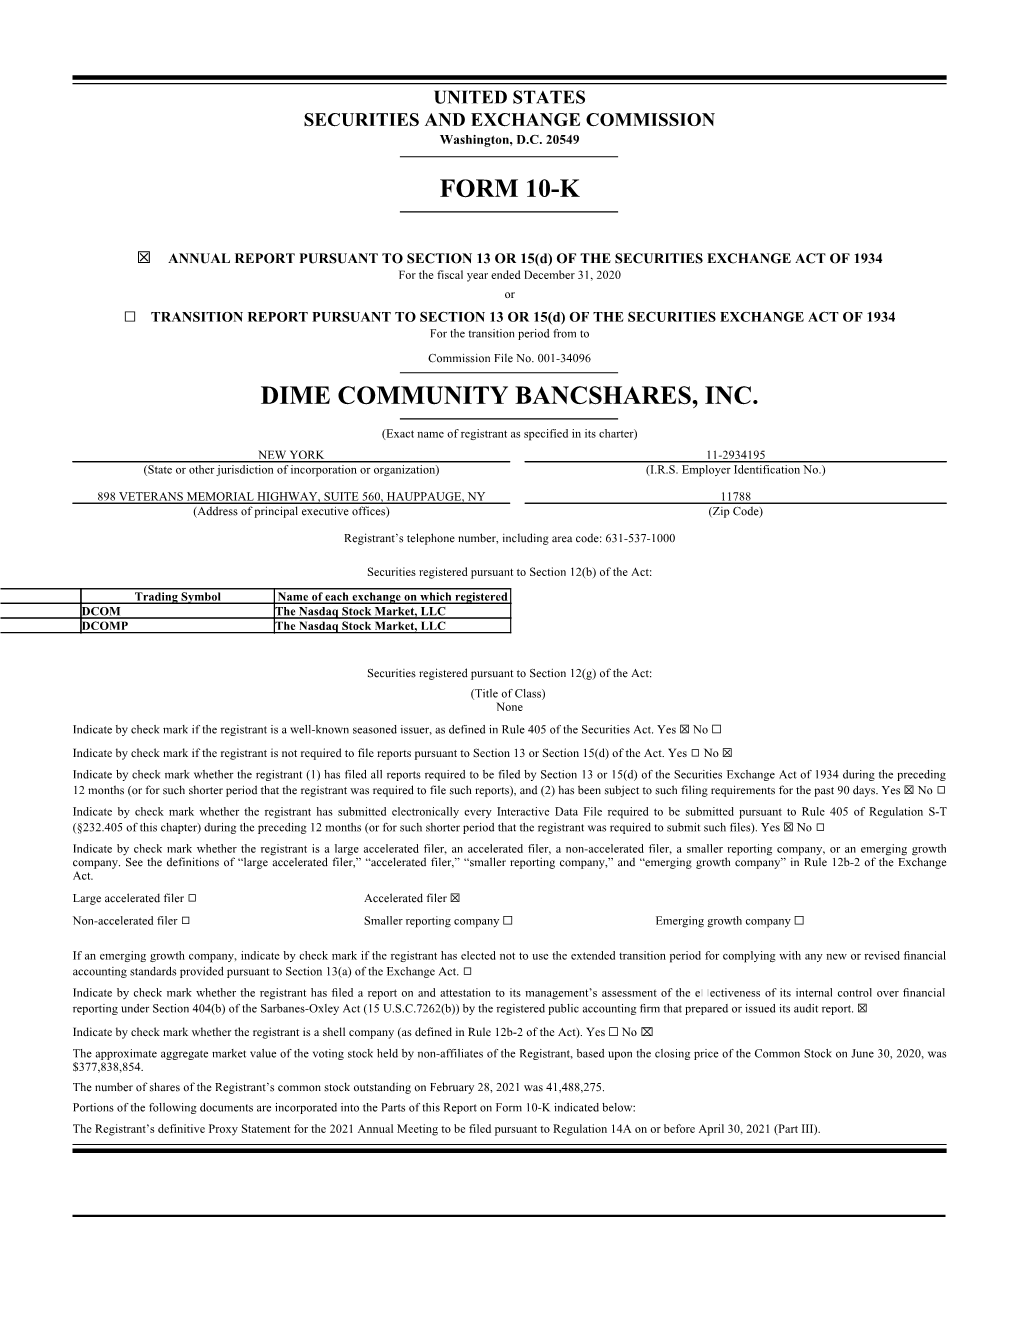 Form 10-K Dime Community Bancshares, Inc